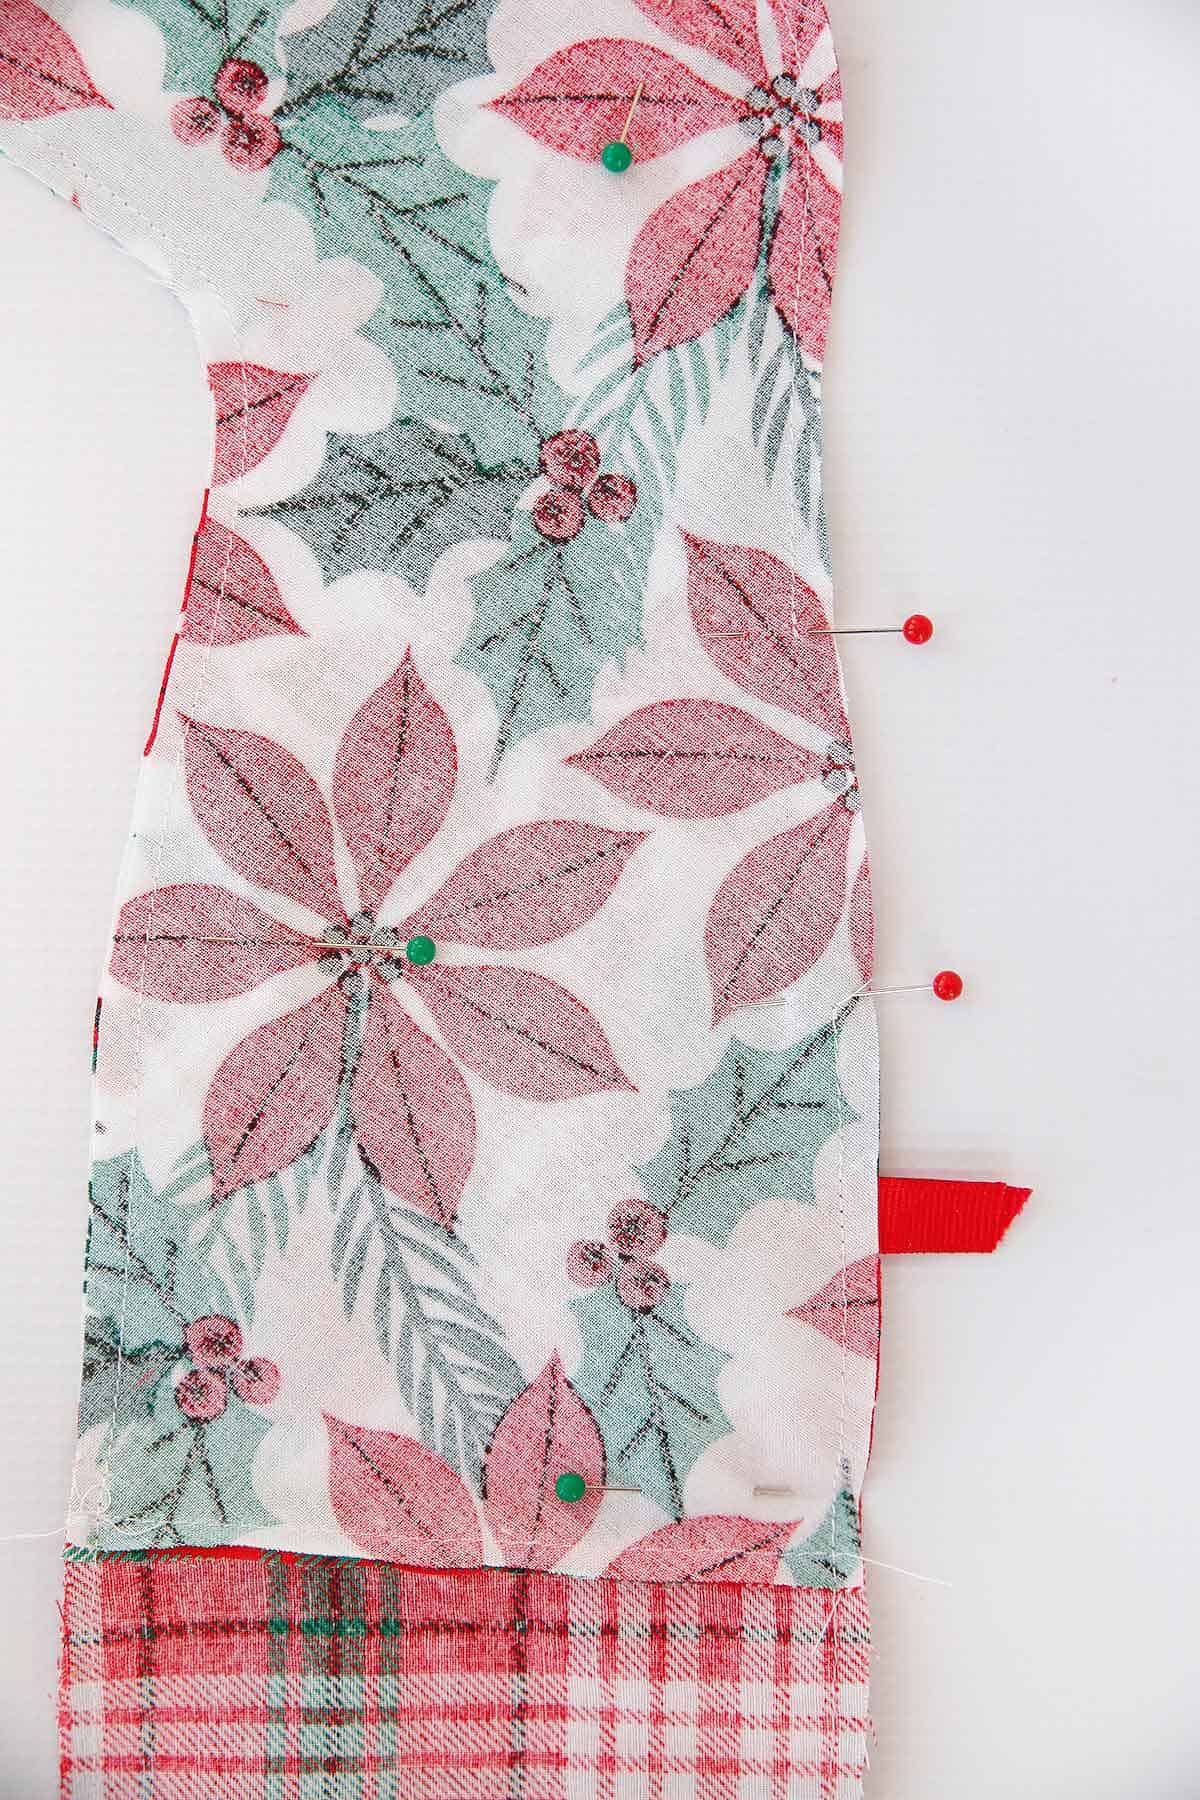 pin stocking and sew around edge